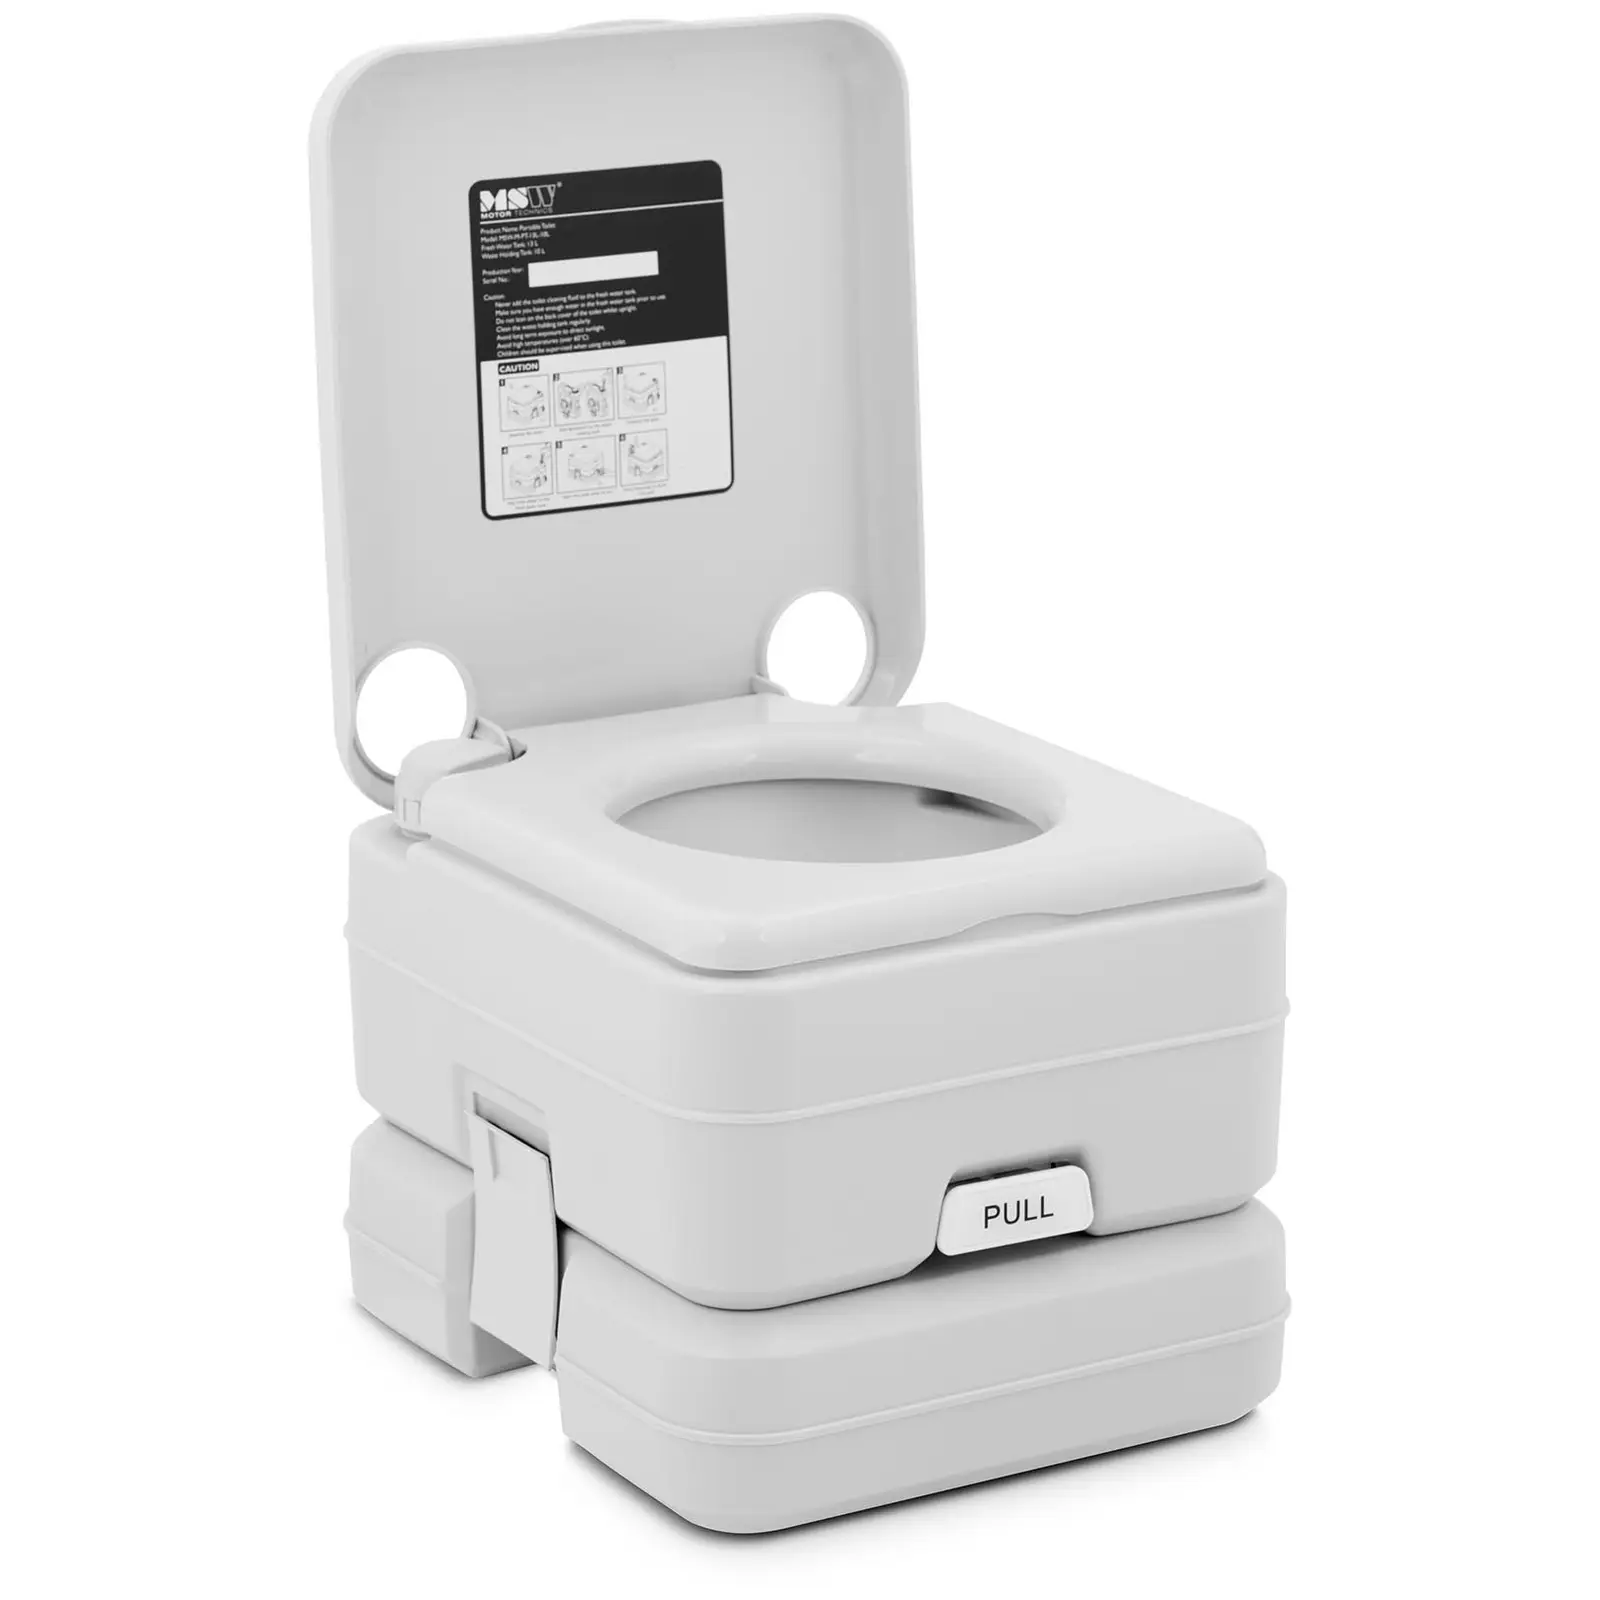 Portabel toalett - Kompakt - För camping, båtar och mera - Miljövänlig - Utan ström